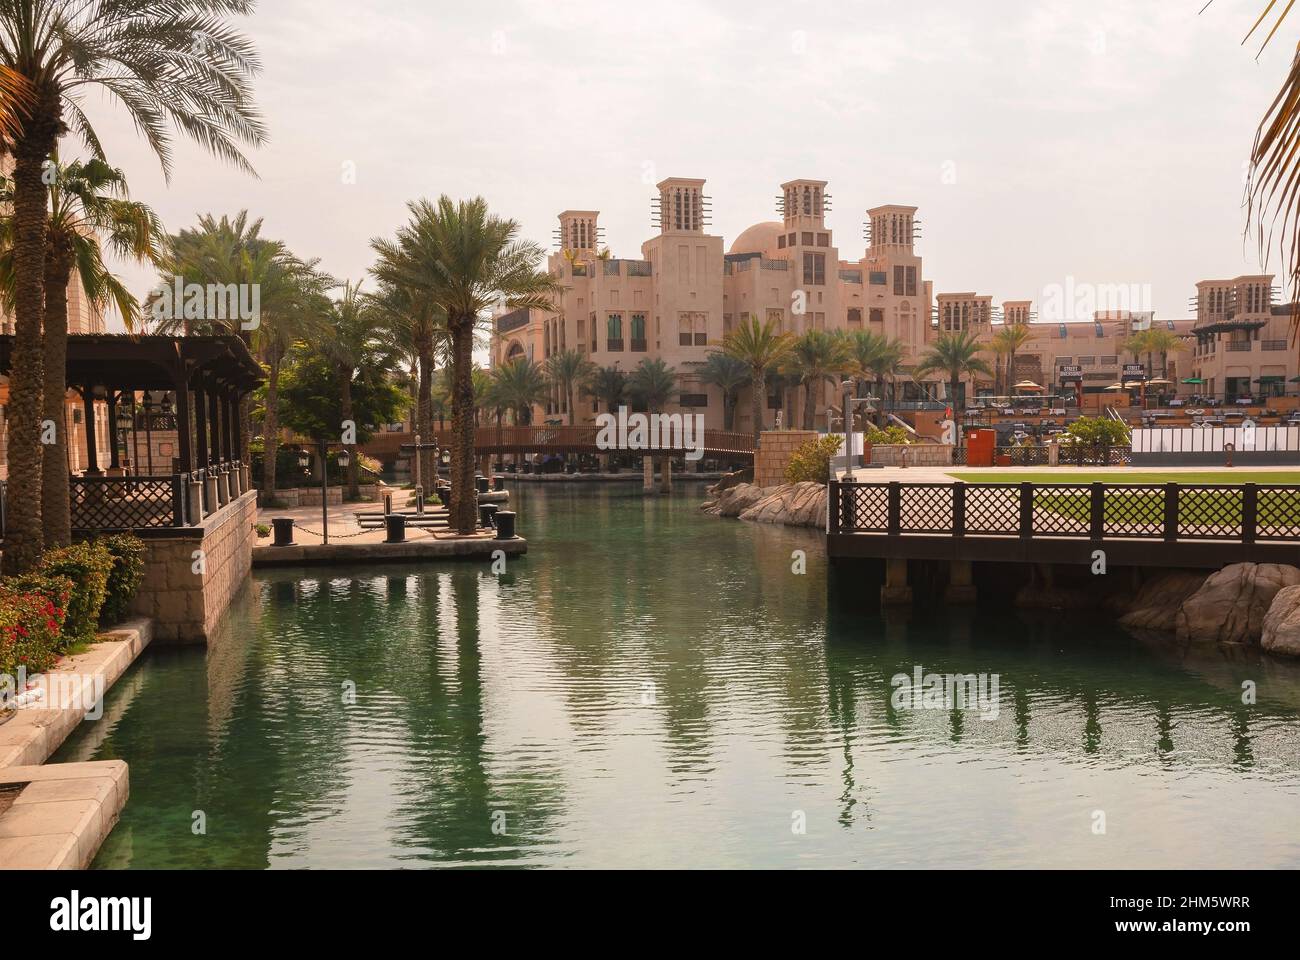 Dubaï, Émirats arabes Unis - 18 janvier 2022 : magnifique Madinat Jumeirah, détails de l'architecture pendant la journée. Banque D'Images